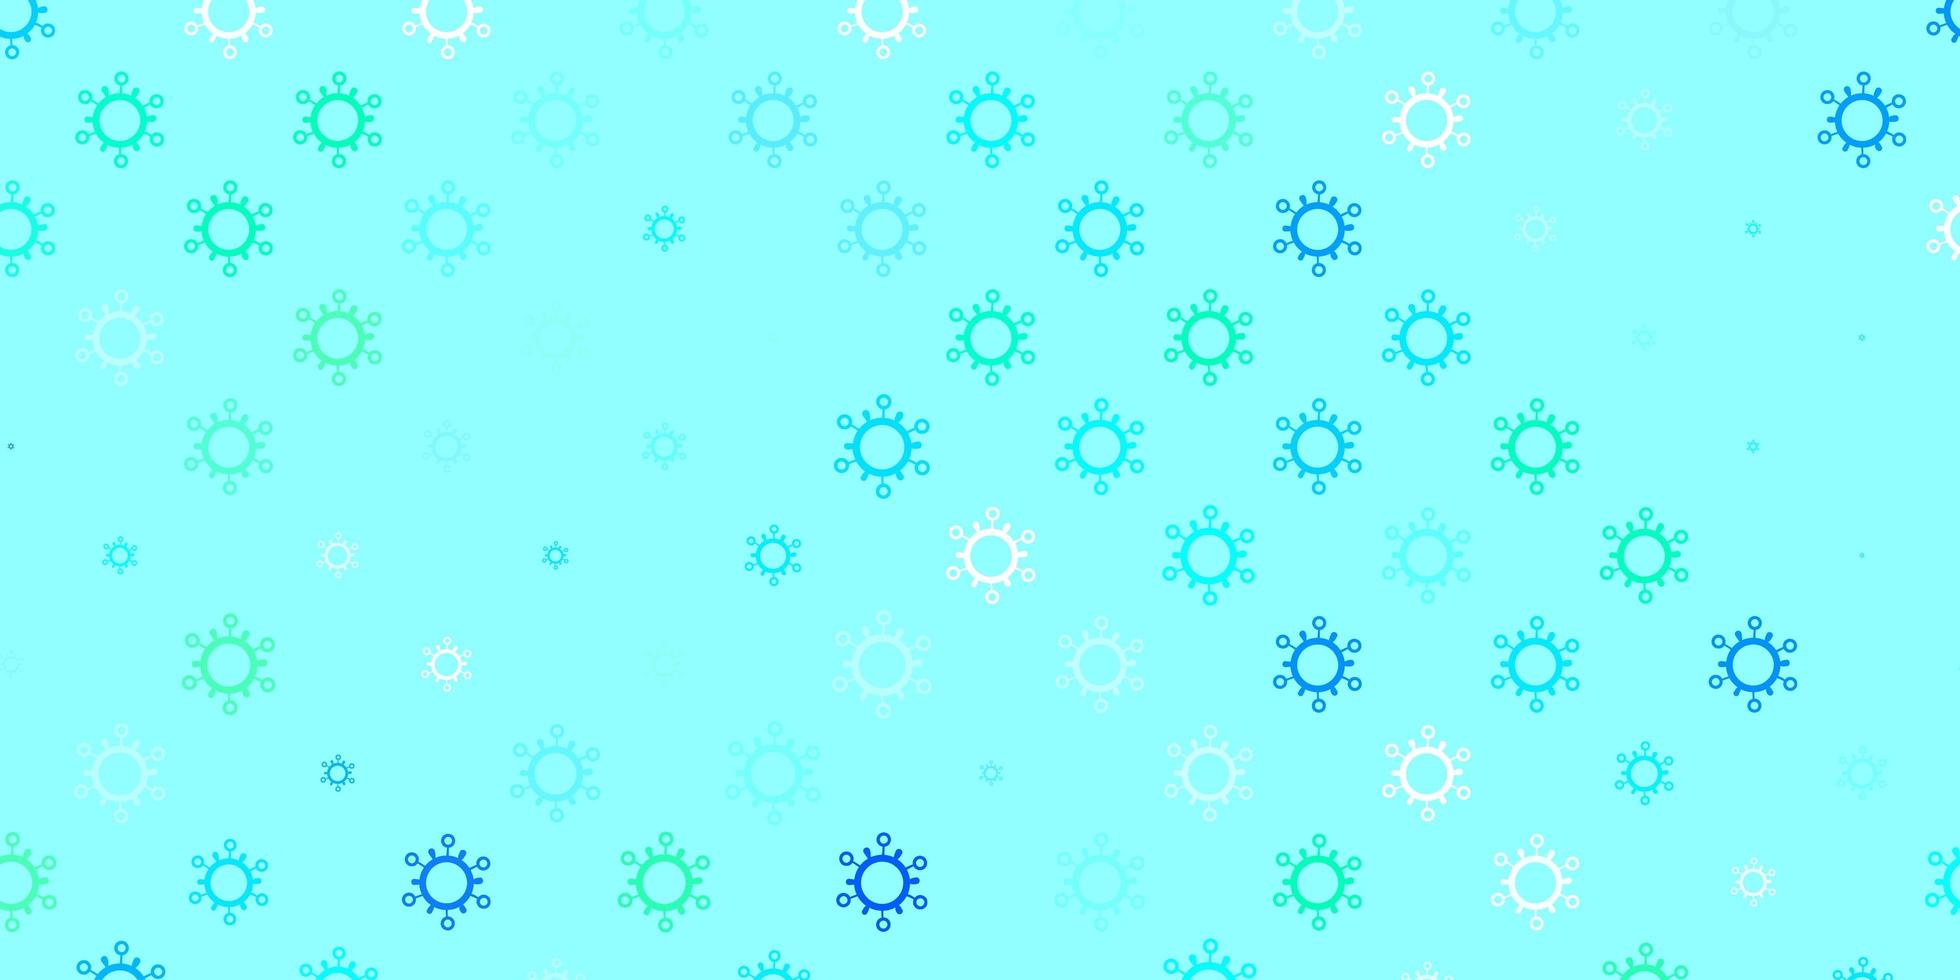 Telón de fondo de vector verde azul claro con símbolos de virus